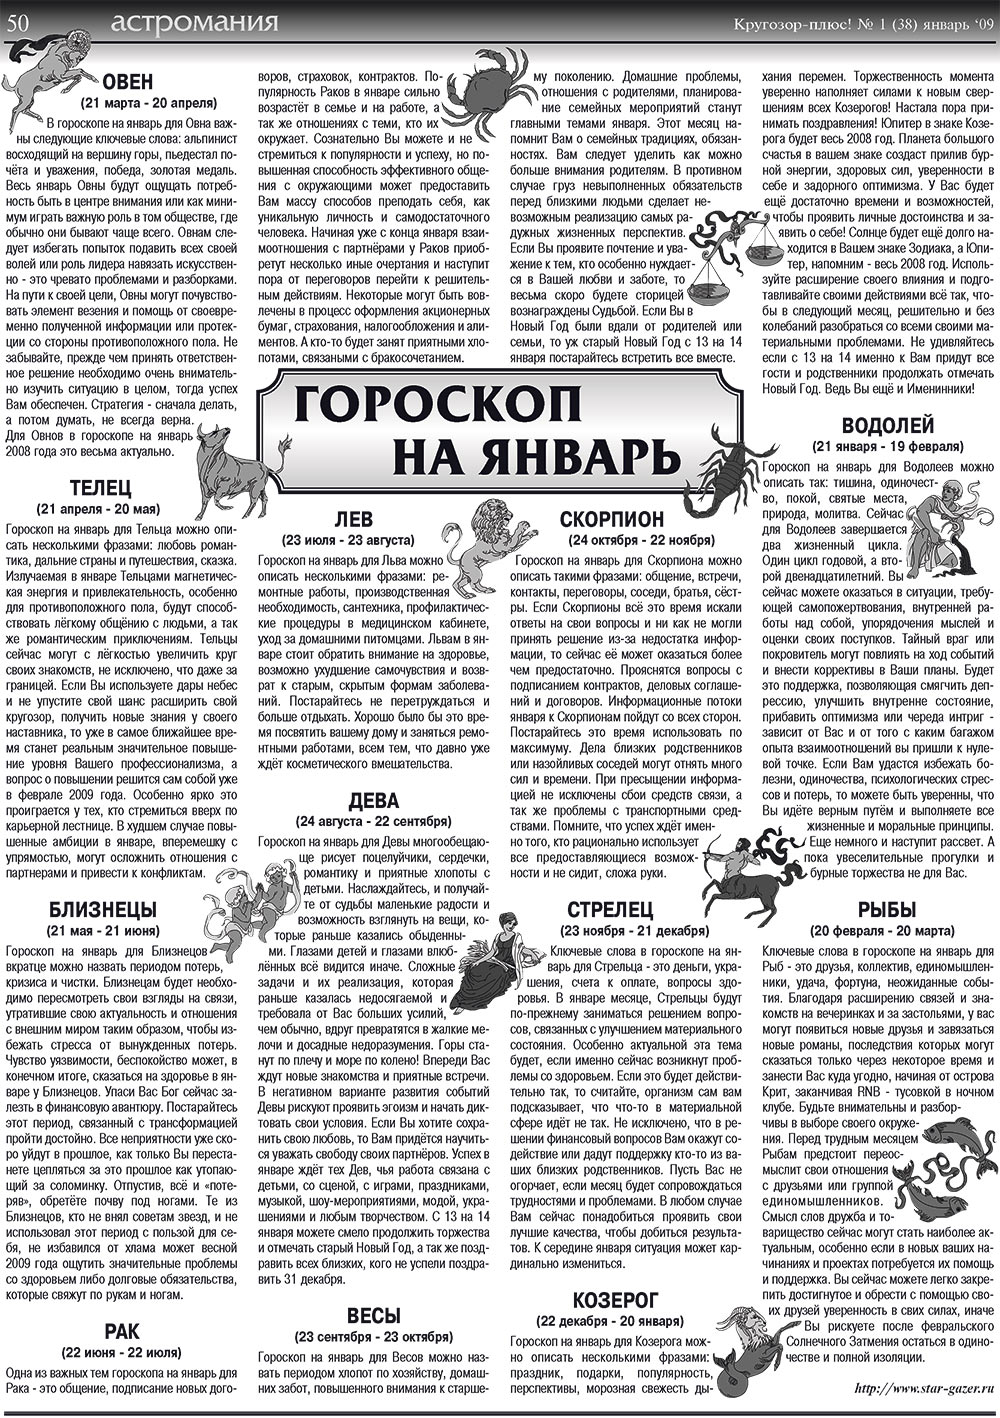 Кругозор плюс!, газета. 2009 №1 стр.50